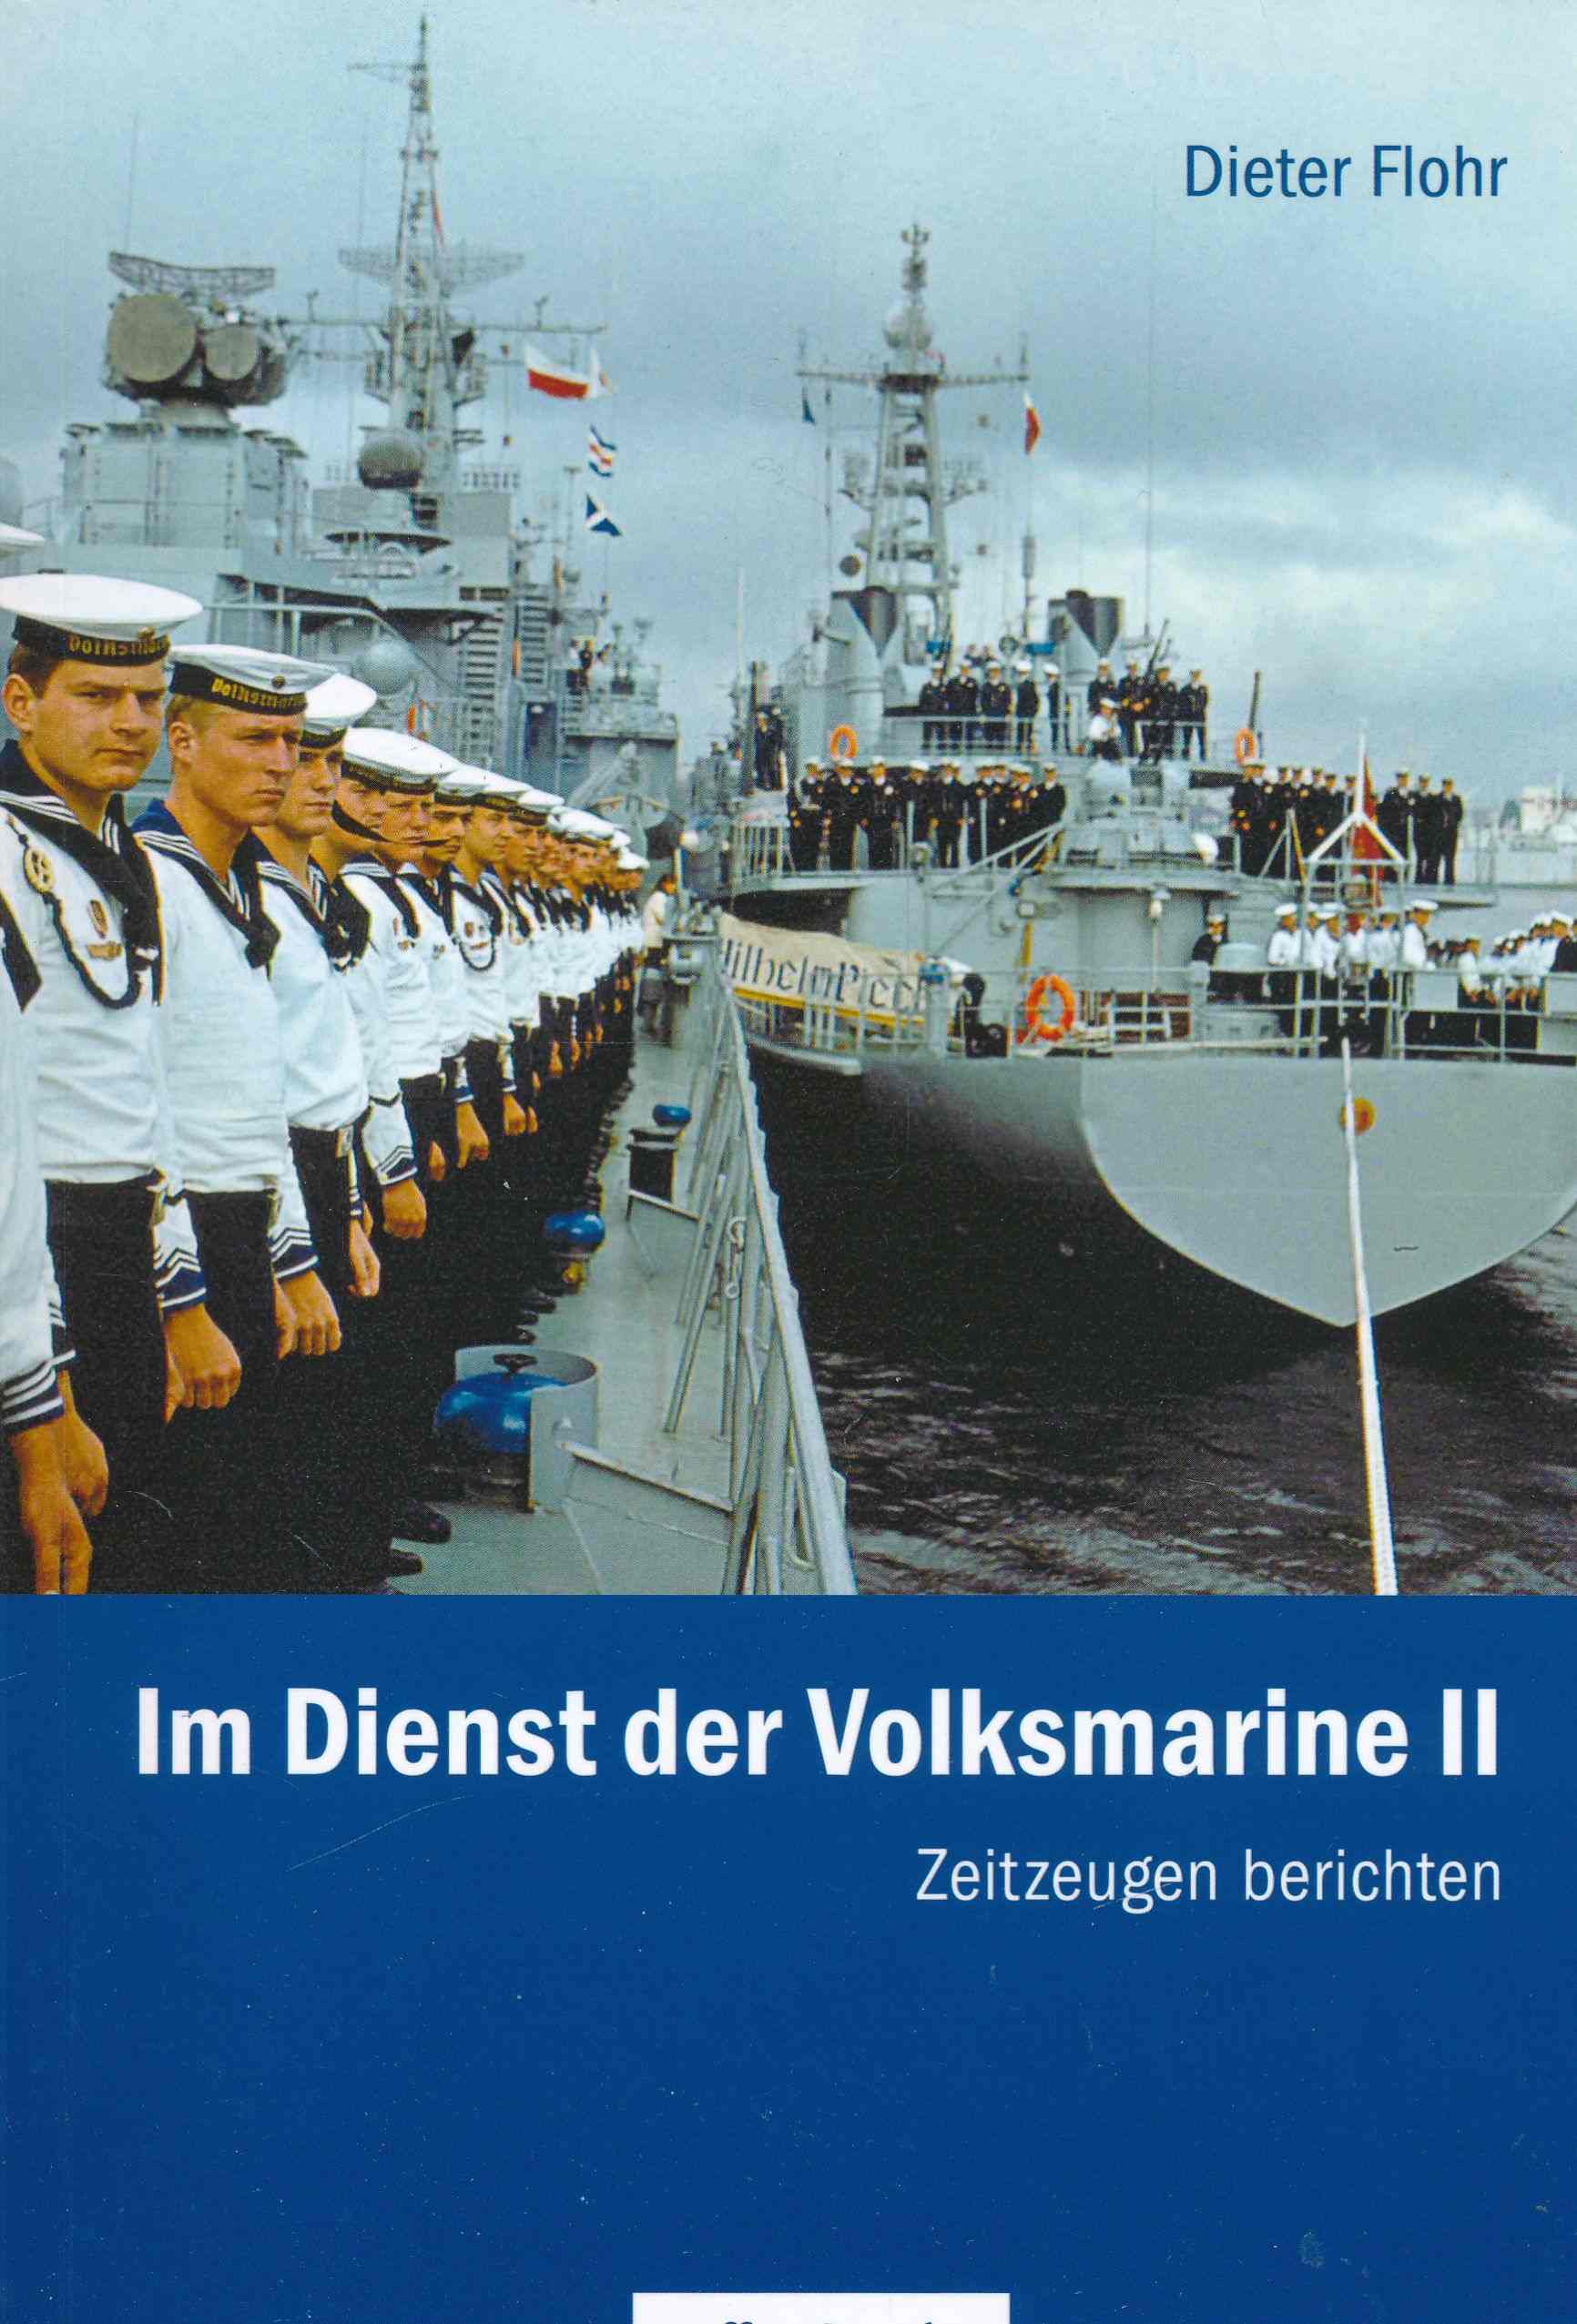 Im Dienst der Volksmarine II: Zeitzeugen berichten. - Dieter Flohr